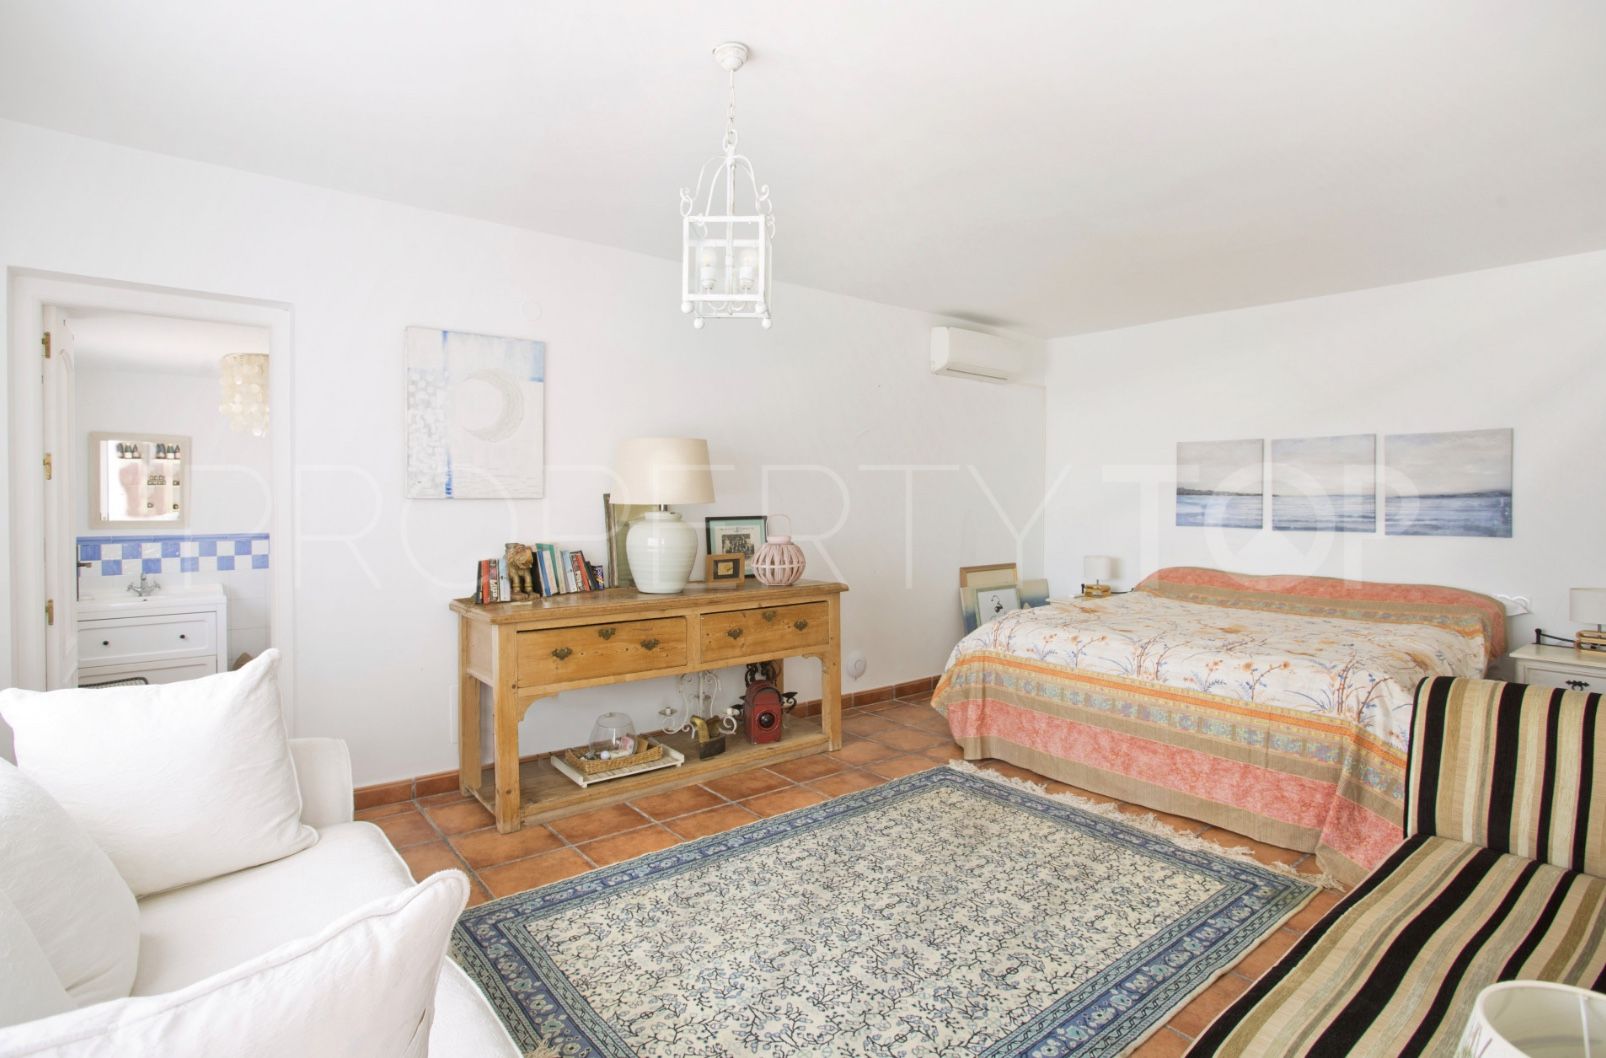 4 bedrooms villa in Fuente del Espanto for sale